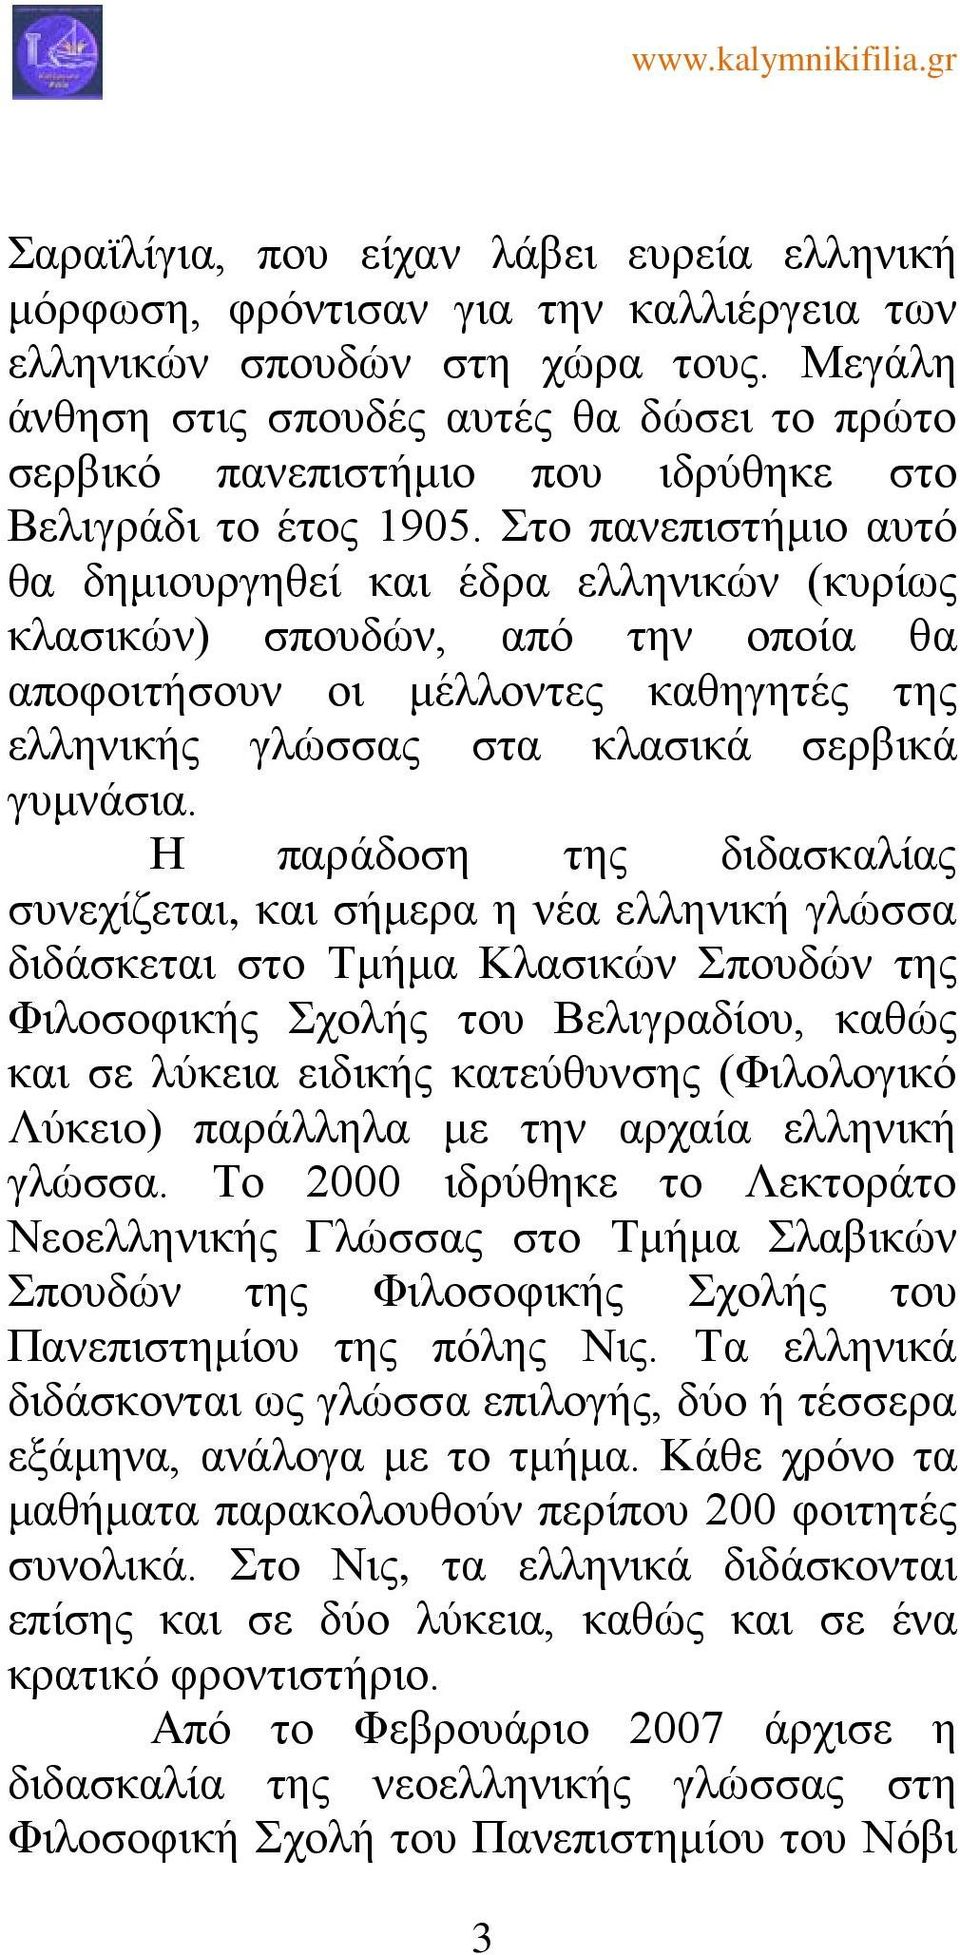 Στο πανεπιστήμιο αυτό θα δημιουργηθεί και έδρα ελληνικών (κυρίως κλασικών) σπουδών, από την οποία θα αποφοιτήσουν οι μέλλοντες καθηγητές της ελληνικής γλώσσας στα κλασικά σερβικά γυμνάσια.